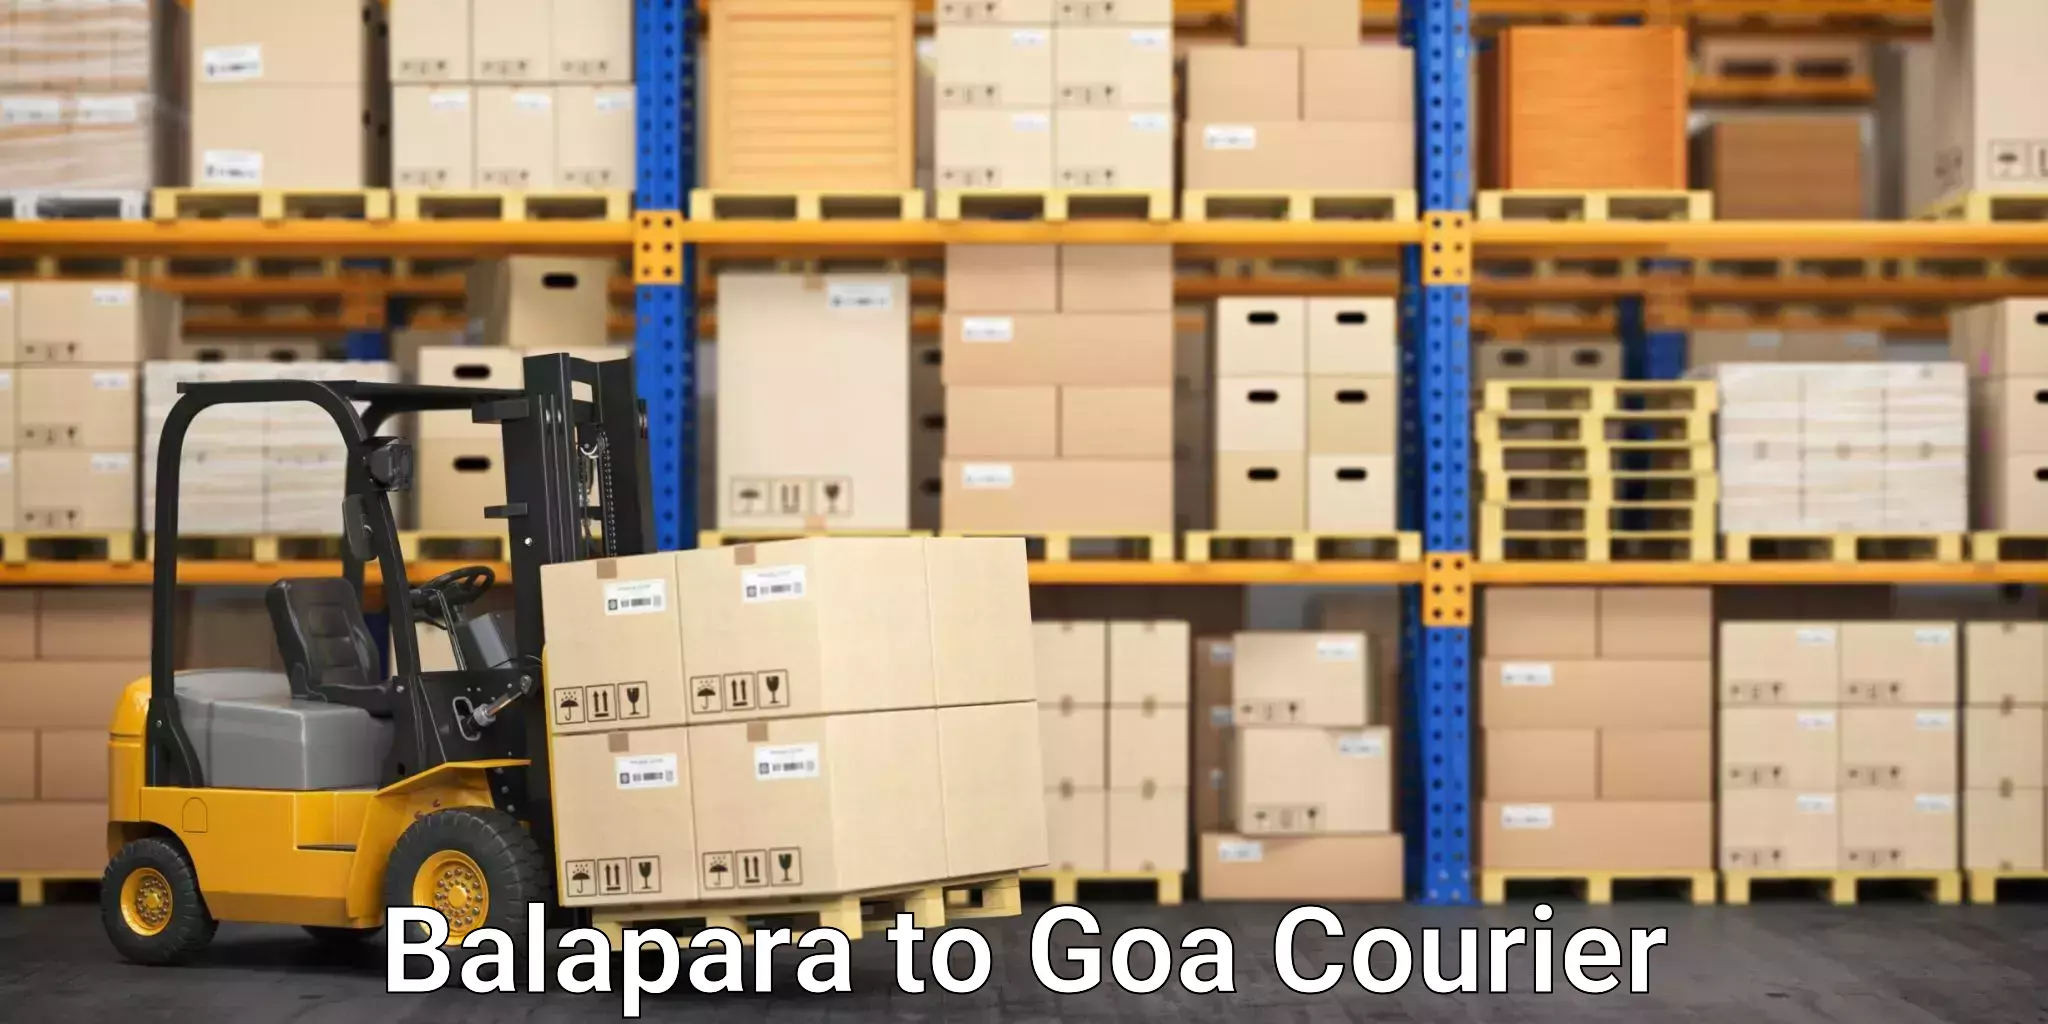 High-capacity parcel service Balapara to Goa